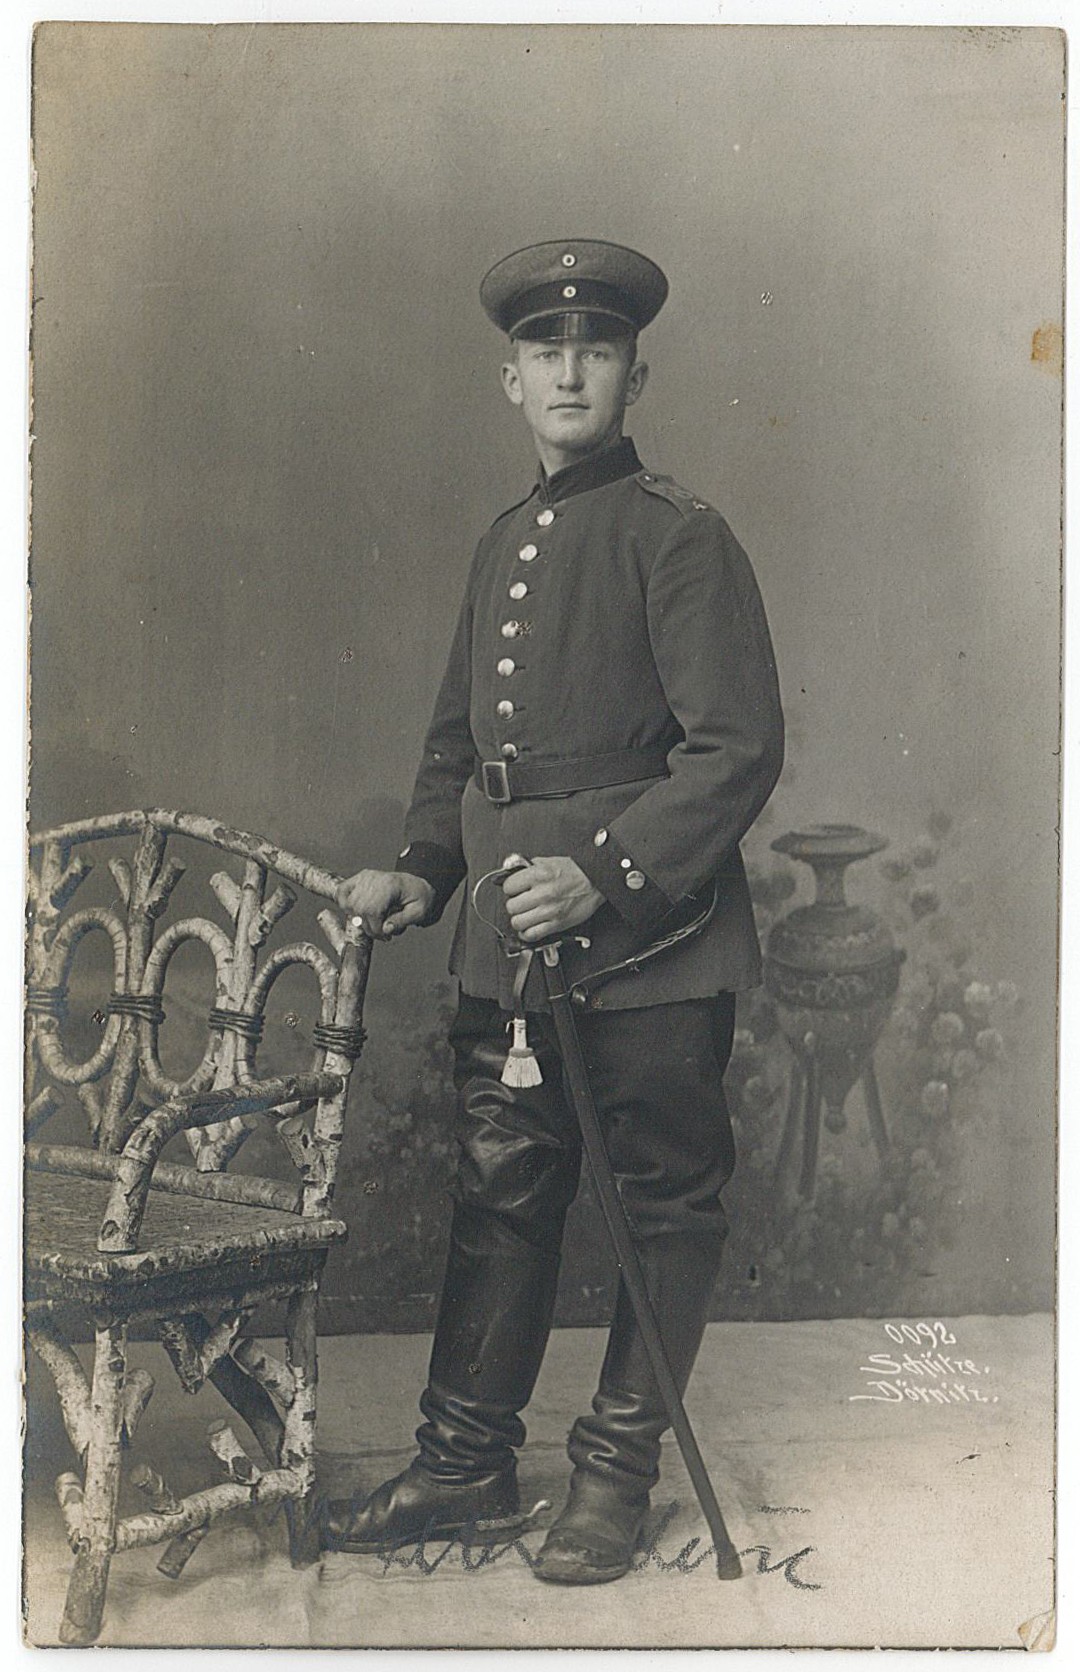 Postkarte von W. Leue an Erich Otto, 03.11.1917 (Museum Wolmirstedt RR-F)